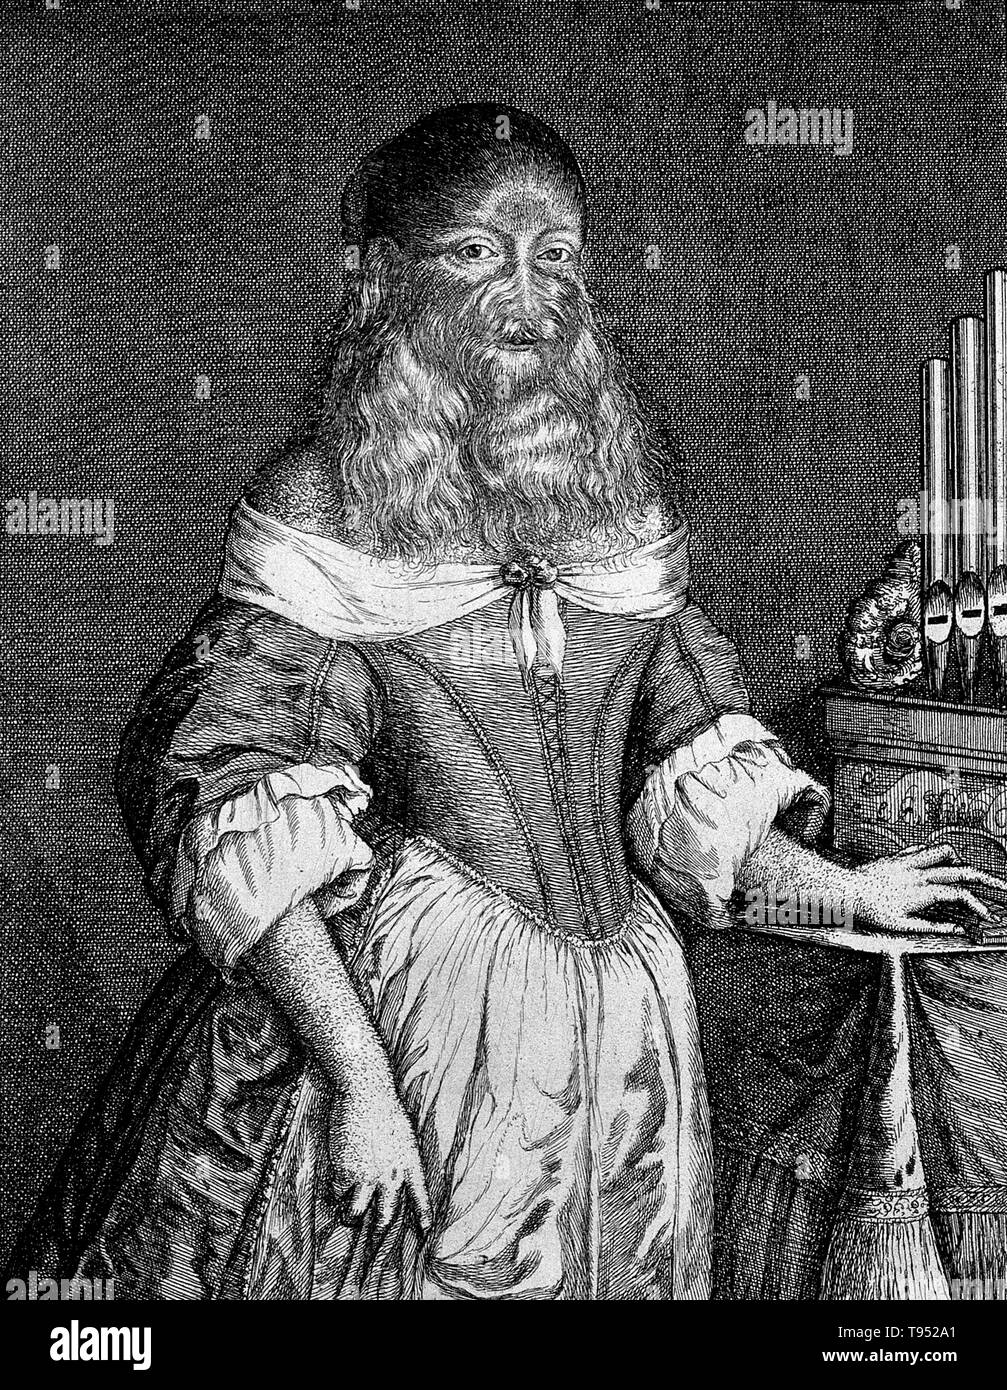 Barbara van Beck (18 février 1629 - ?) était une Allemande qui souffrait d'un trouble génétique rare, l'hypertrichose universalis, également connu sous le nom de syndrome d'Ambras ou loup-garou. Ses parents n'avait pas de signe de cette état héréditaire pour sa naissance doit avoir été une grande surprise pour eux. Elle s'est fait connaître en 1639 lorsque l'anatomiste Thomas Bartholin a vu son exposé à Copenhague. Il a noté que son corps tout entier était couvert de soft, cheveux blonds et une barbe luxuriante'. Banque D'Images